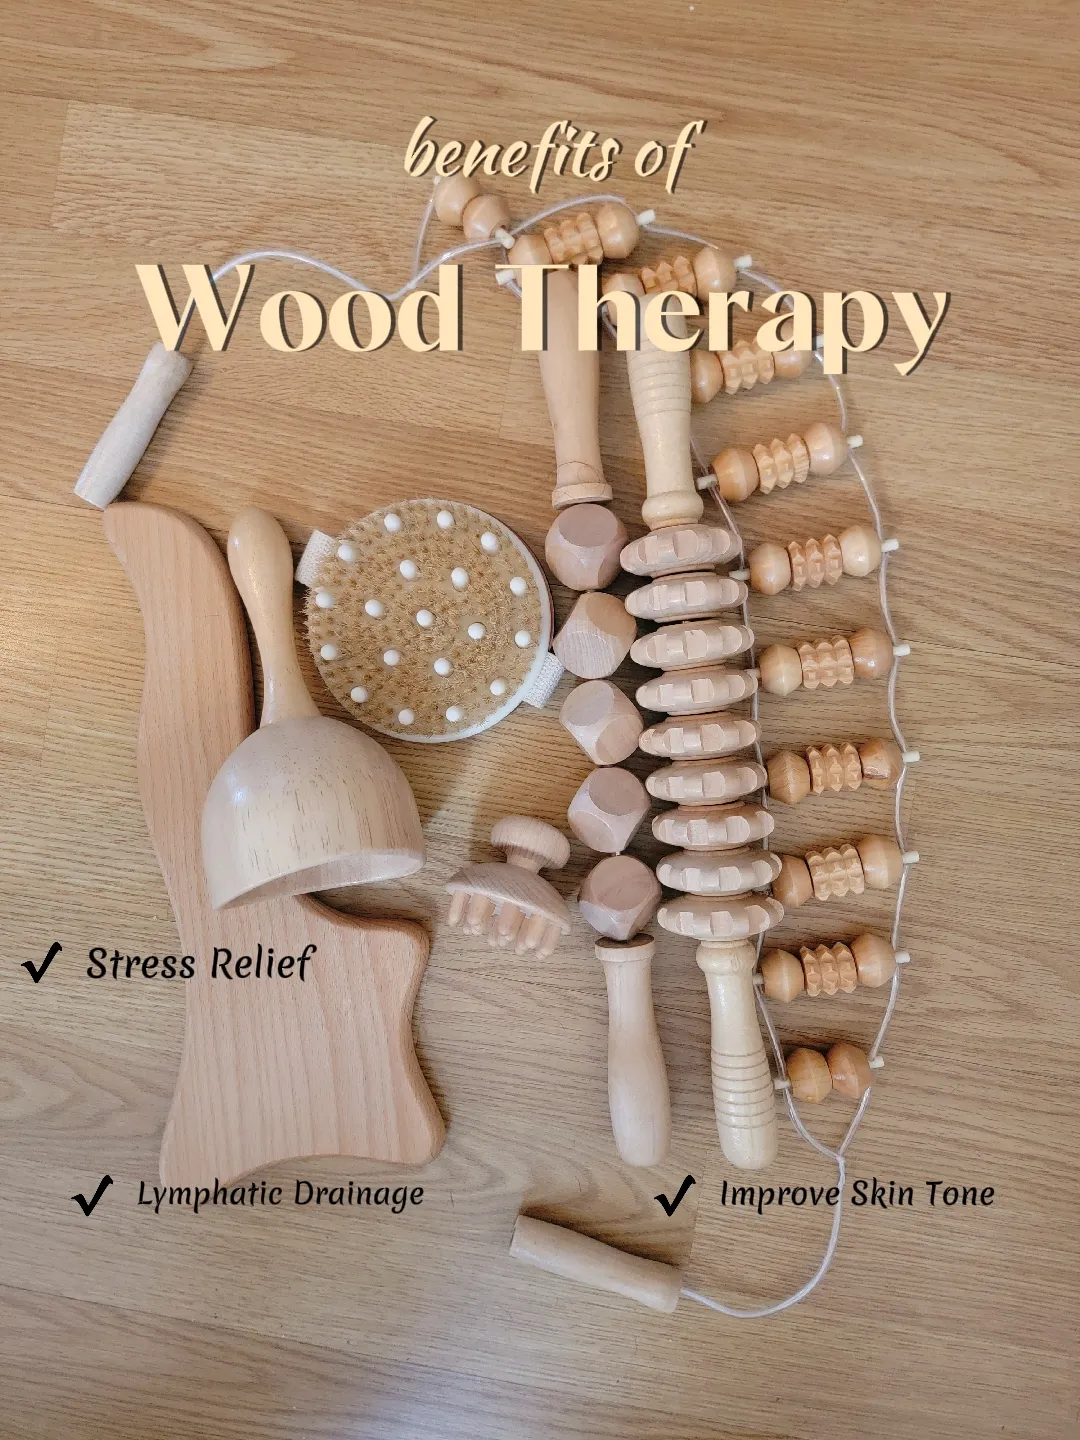 Wood Theraphy Massage - Lemon8 Search